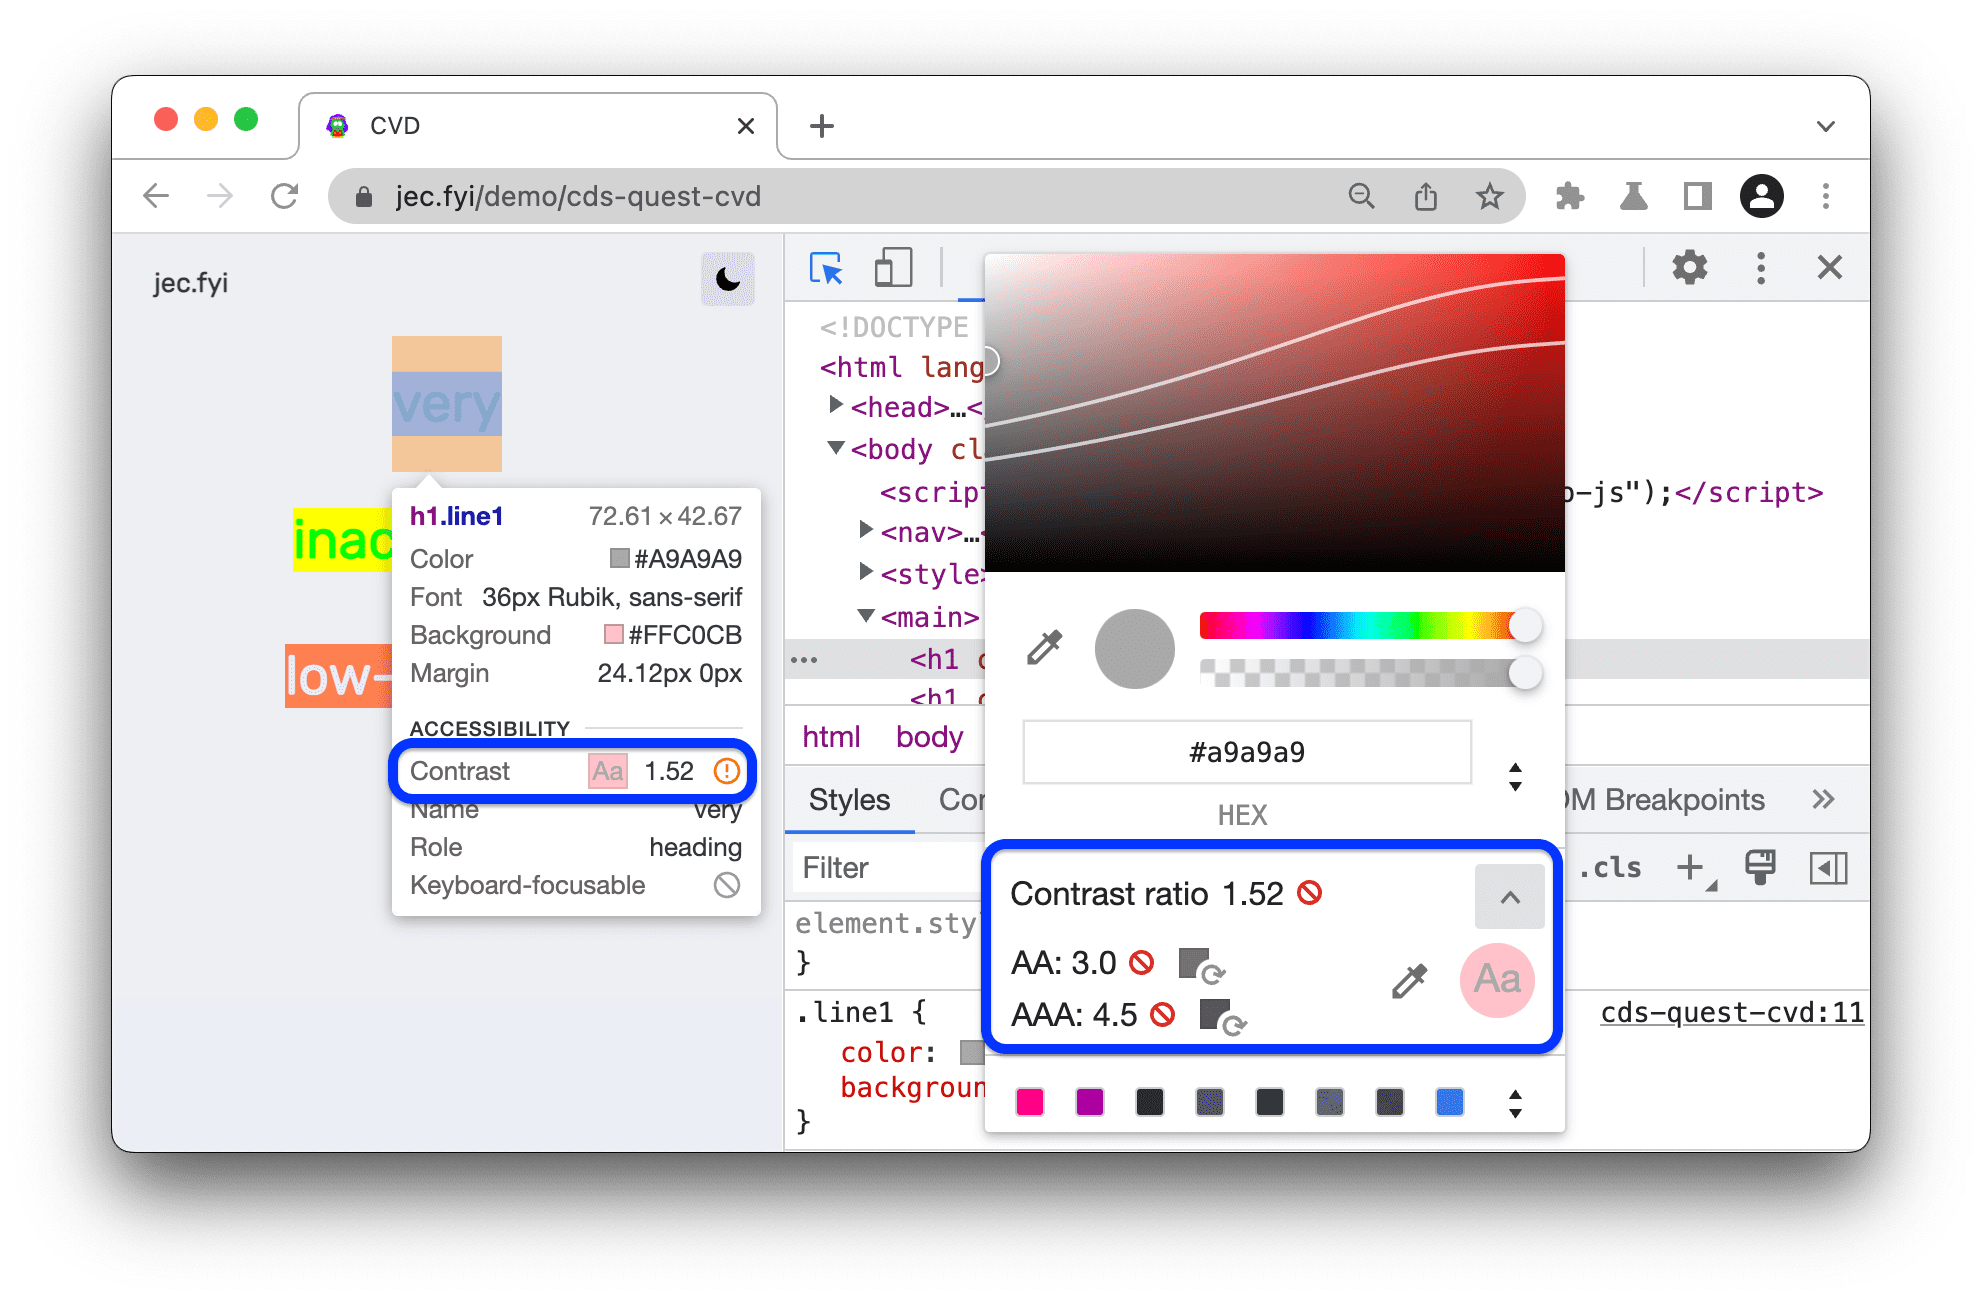 Las relaciones de contraste están disponibles en una información sobre la herramienta, con un selector de color para medir la proporción de colores alternativos. Están disponibles las calificaciones AA y AAA de la proporción.